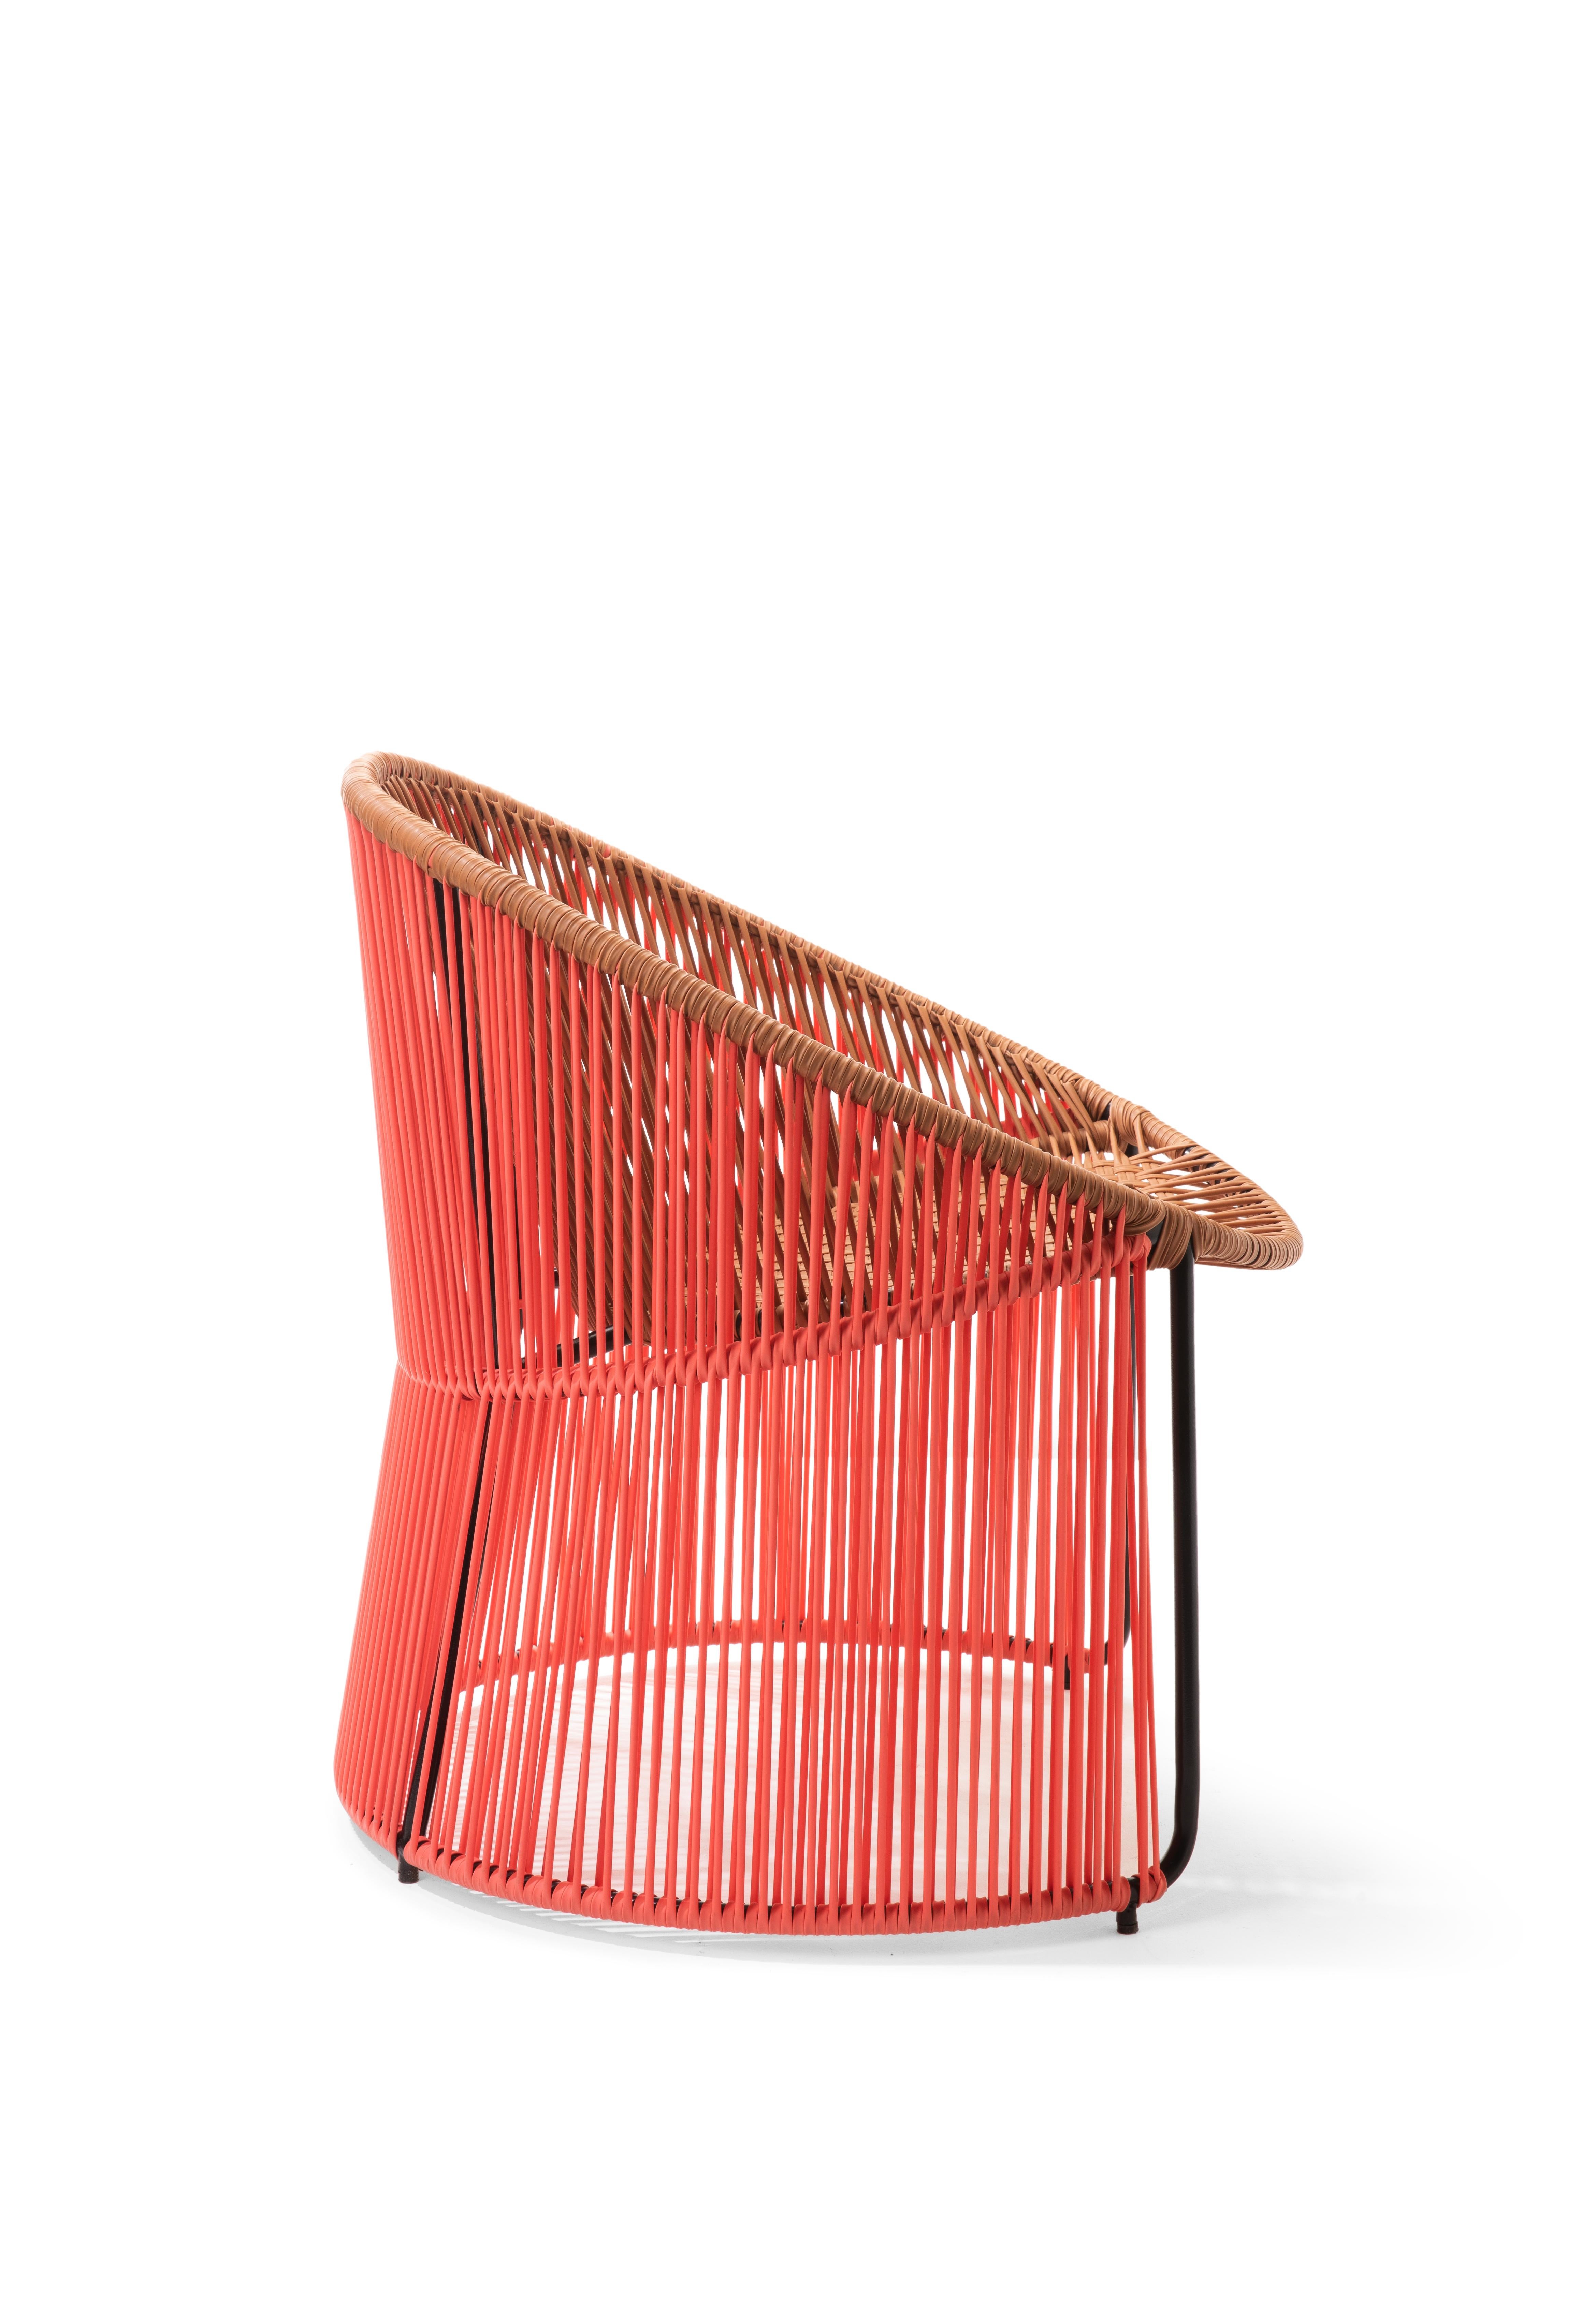 German Set of 2 Coral Cartagenas Lounge Chair by Sebastian Herkner